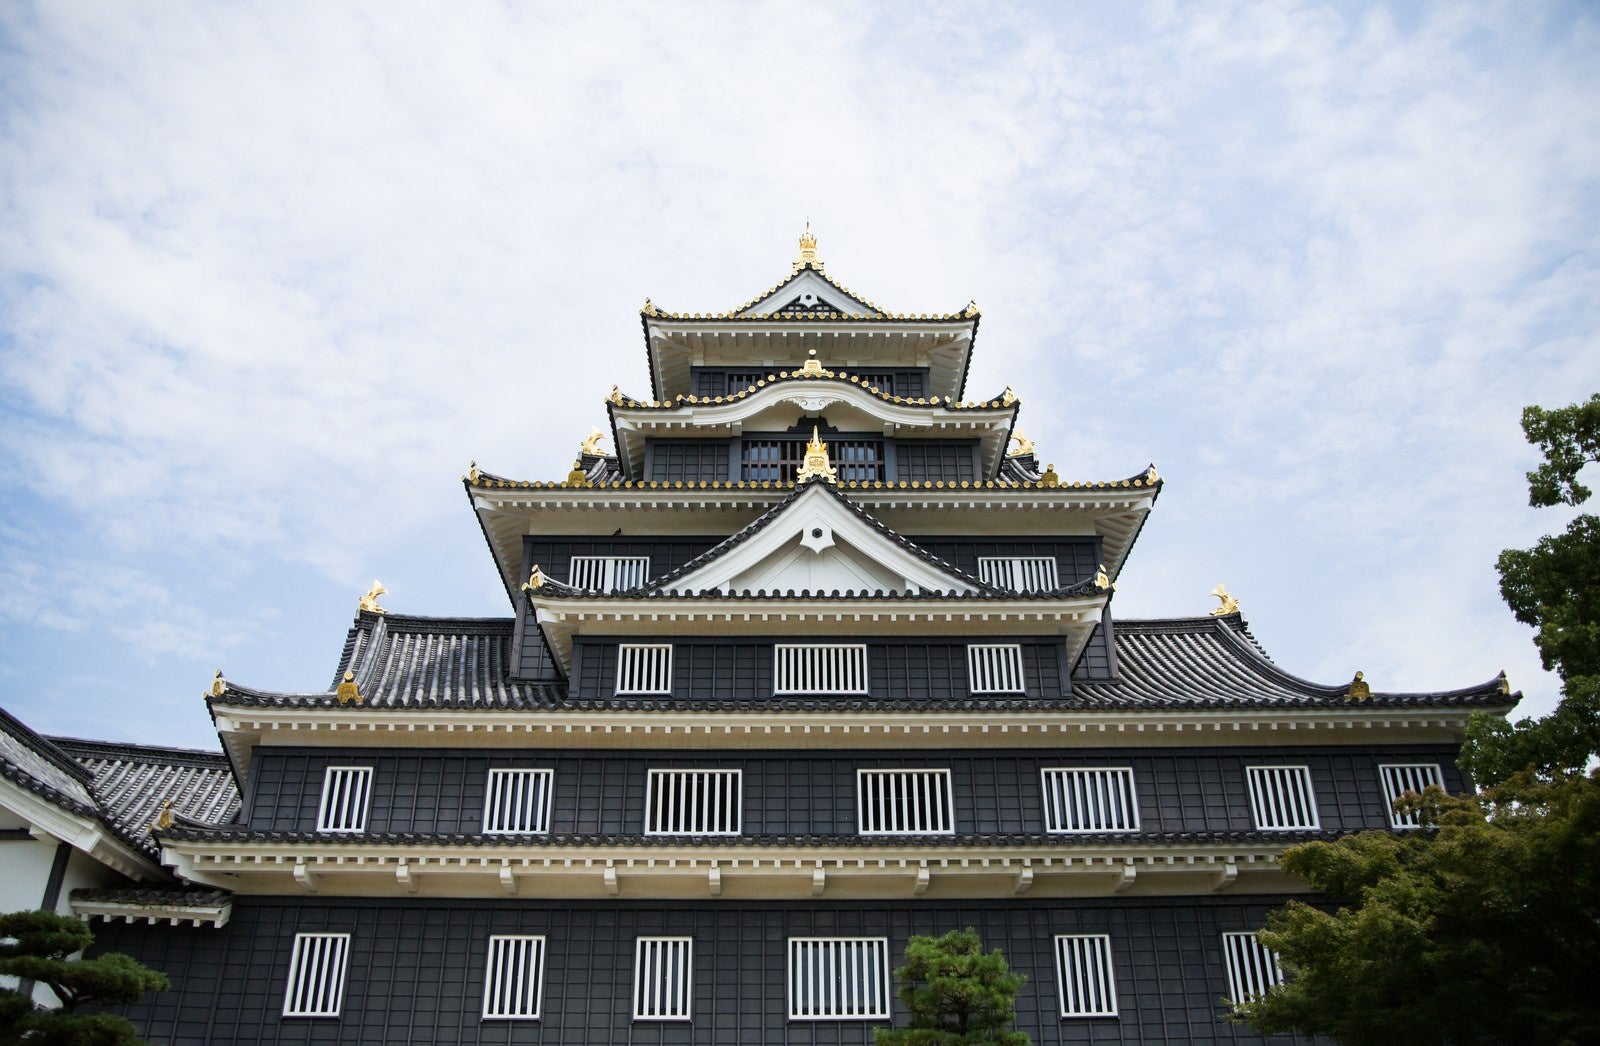 「漆黒の城､岡山城」の写真